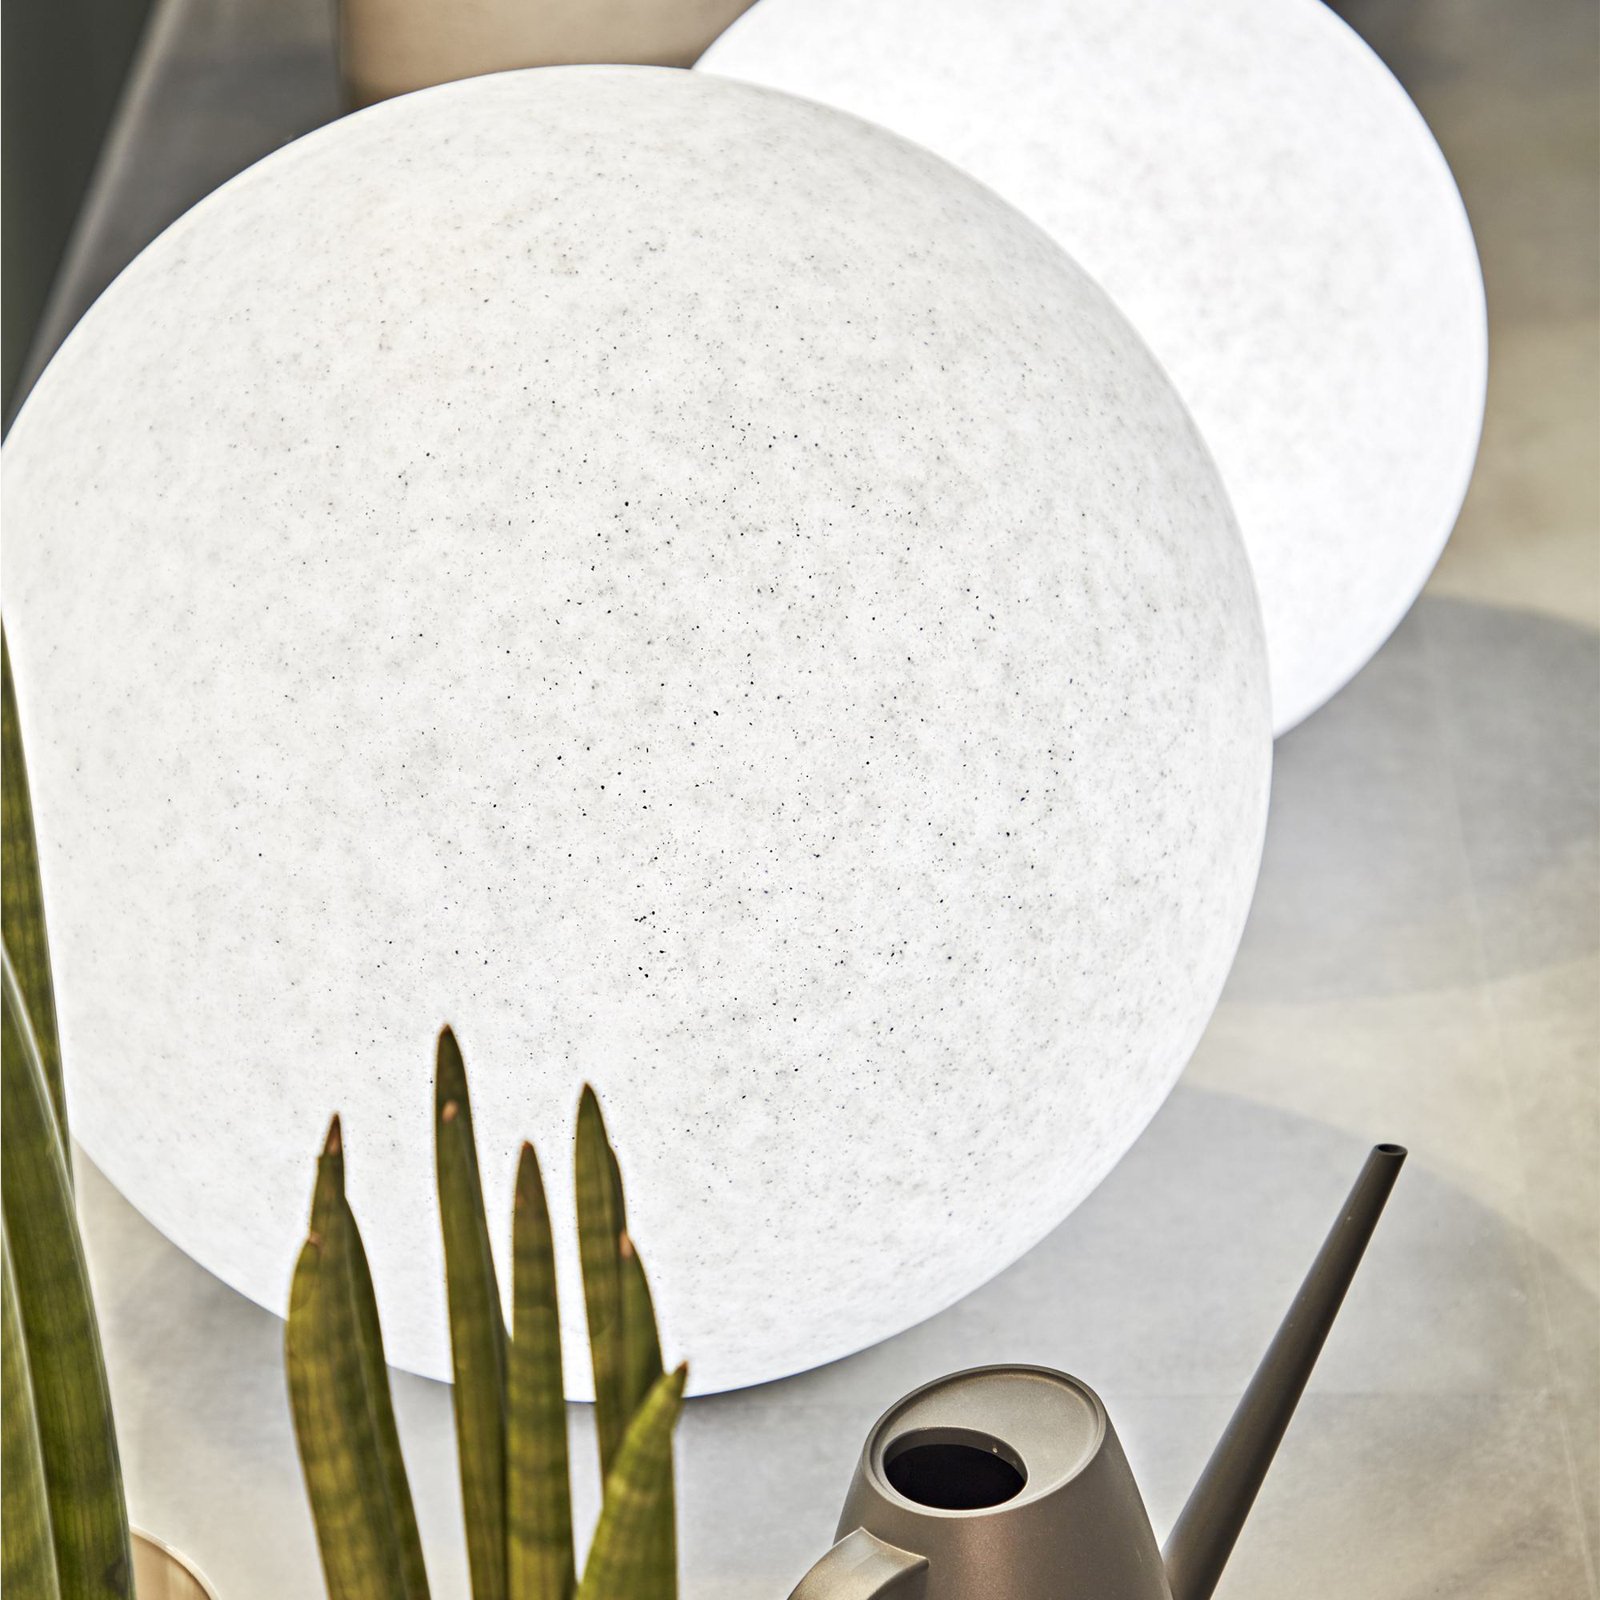 Ideal Lux Doris földi tüskés lámpa, fehér, műanyag, Ø 78 cm